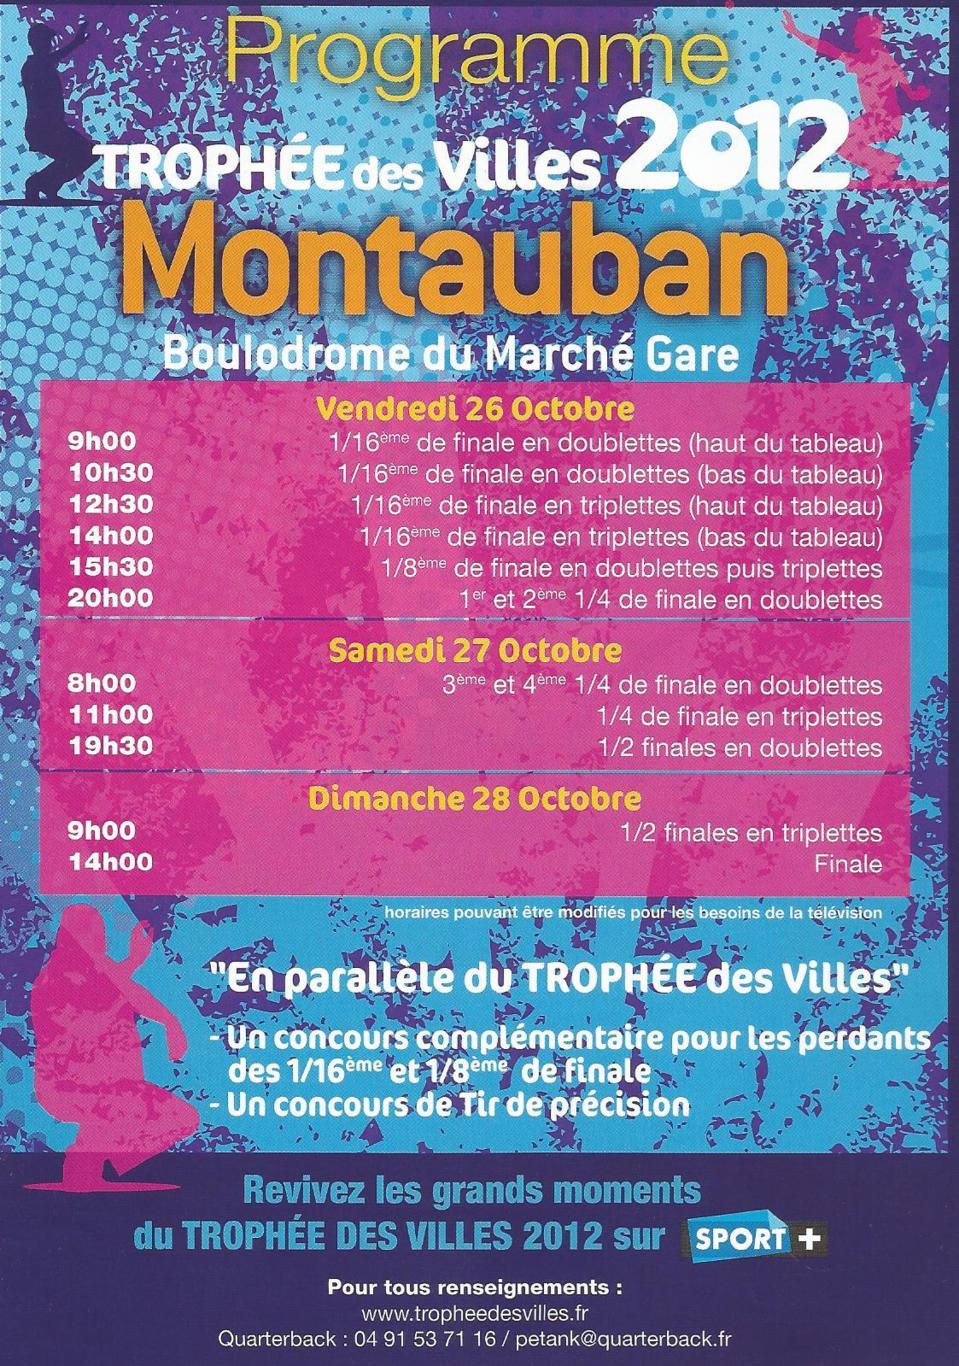 Trophée des villes 2012 à Montauban